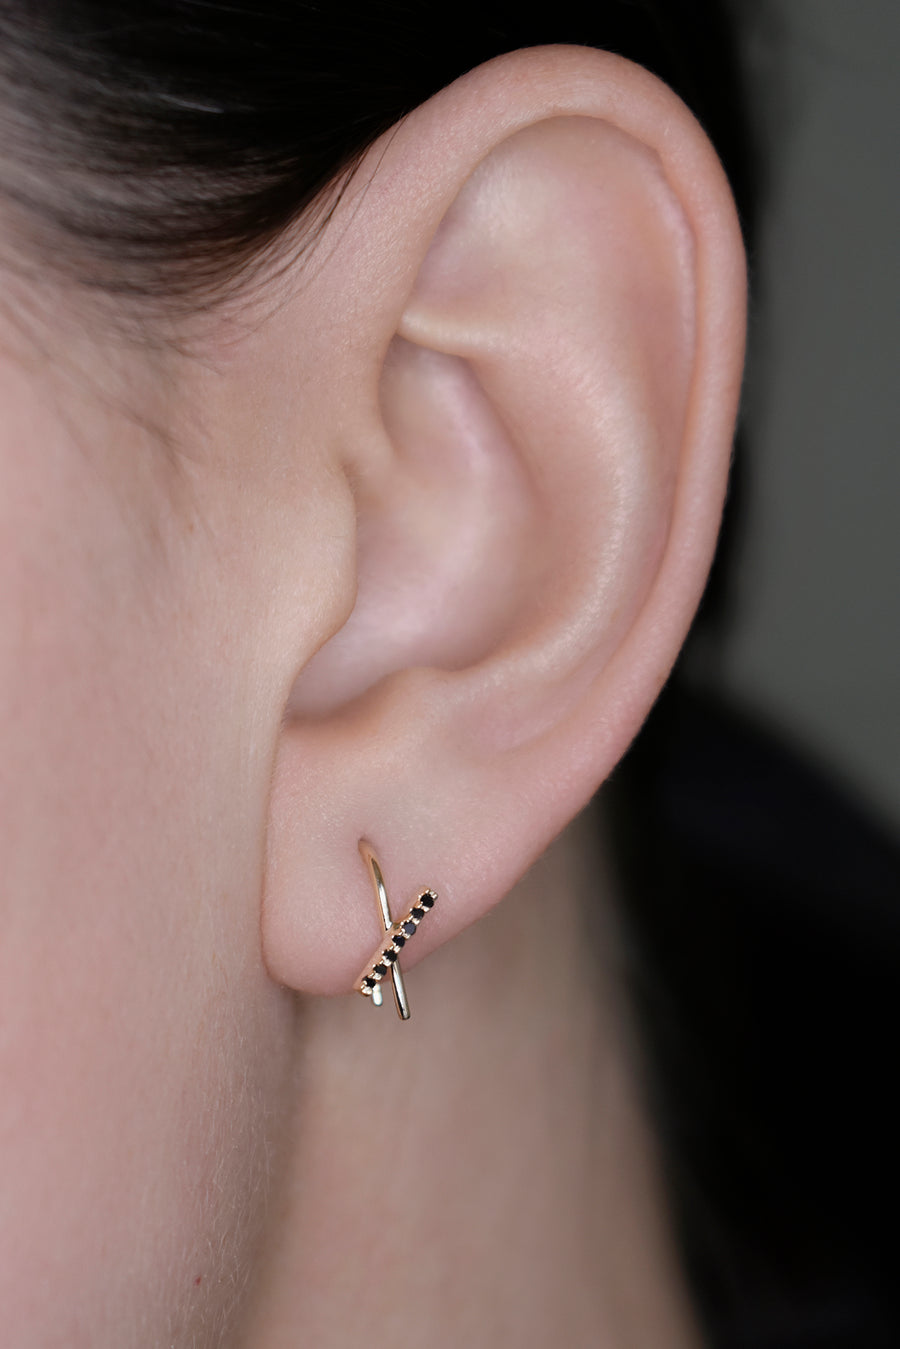 Go Through Earrings, Go Through Ear - Etsy | Fashion earrings, Cross  earrings, Fashion jewelry